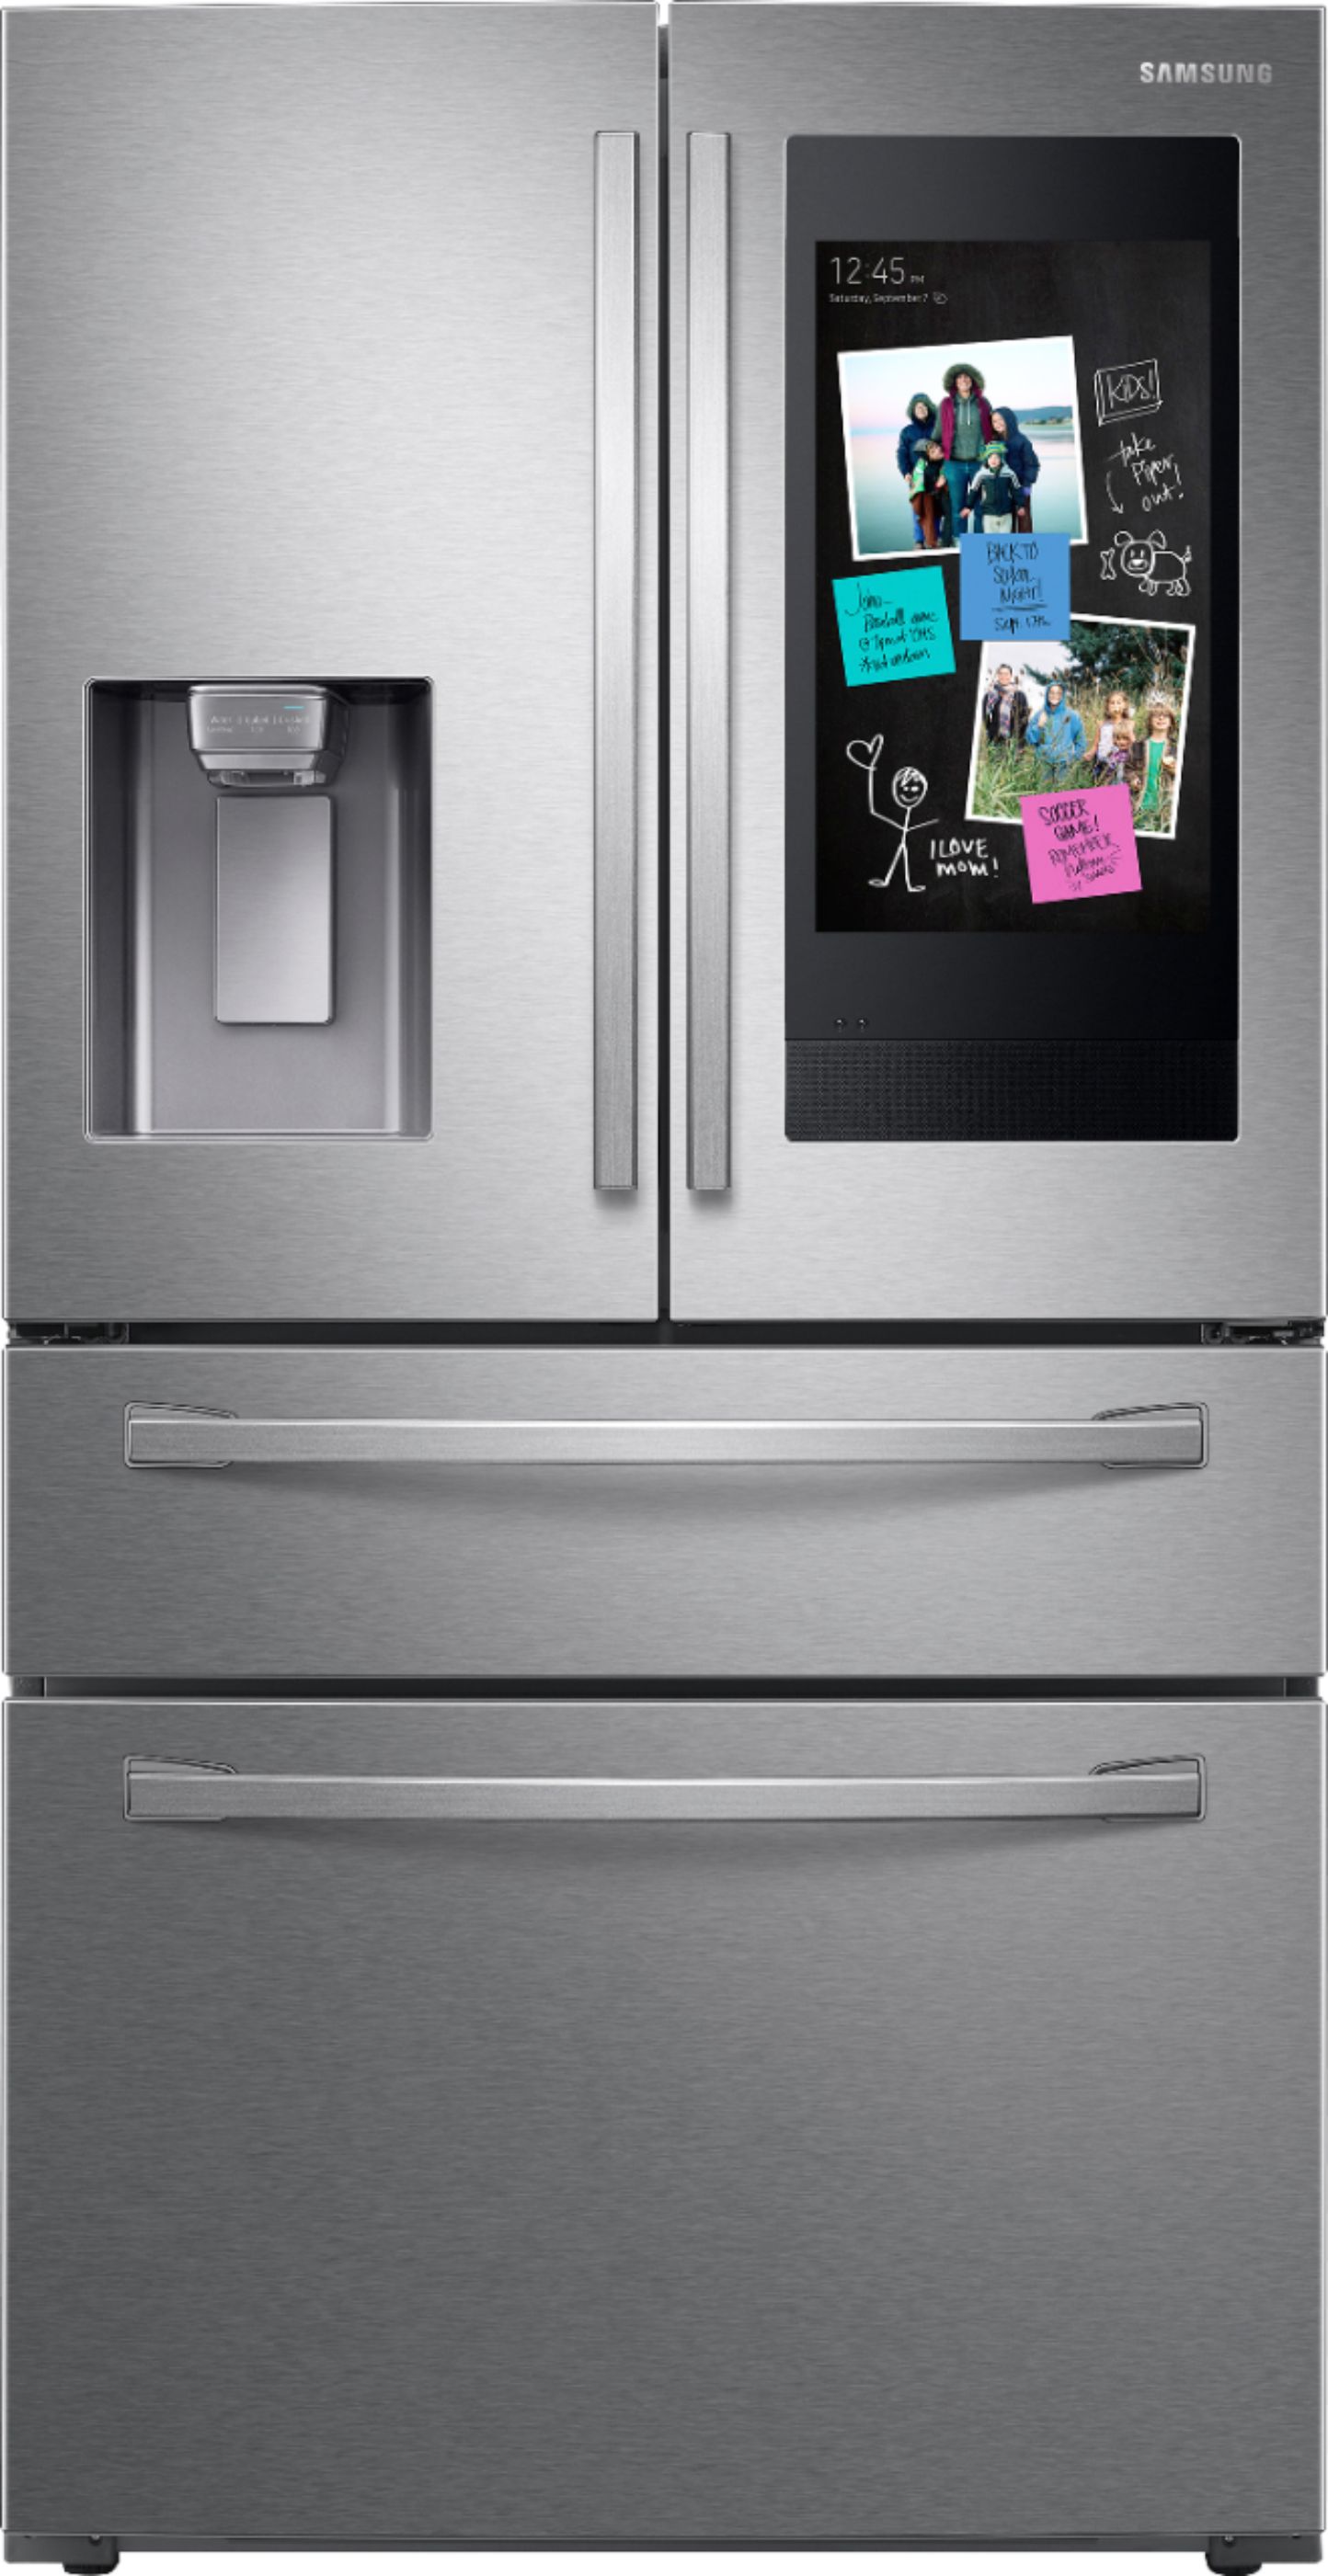 Samsung - Family Hub 27.7 Cu. Ft. 4-Door French Door Refrigerator - Fingerprint Resistant Stainless steel